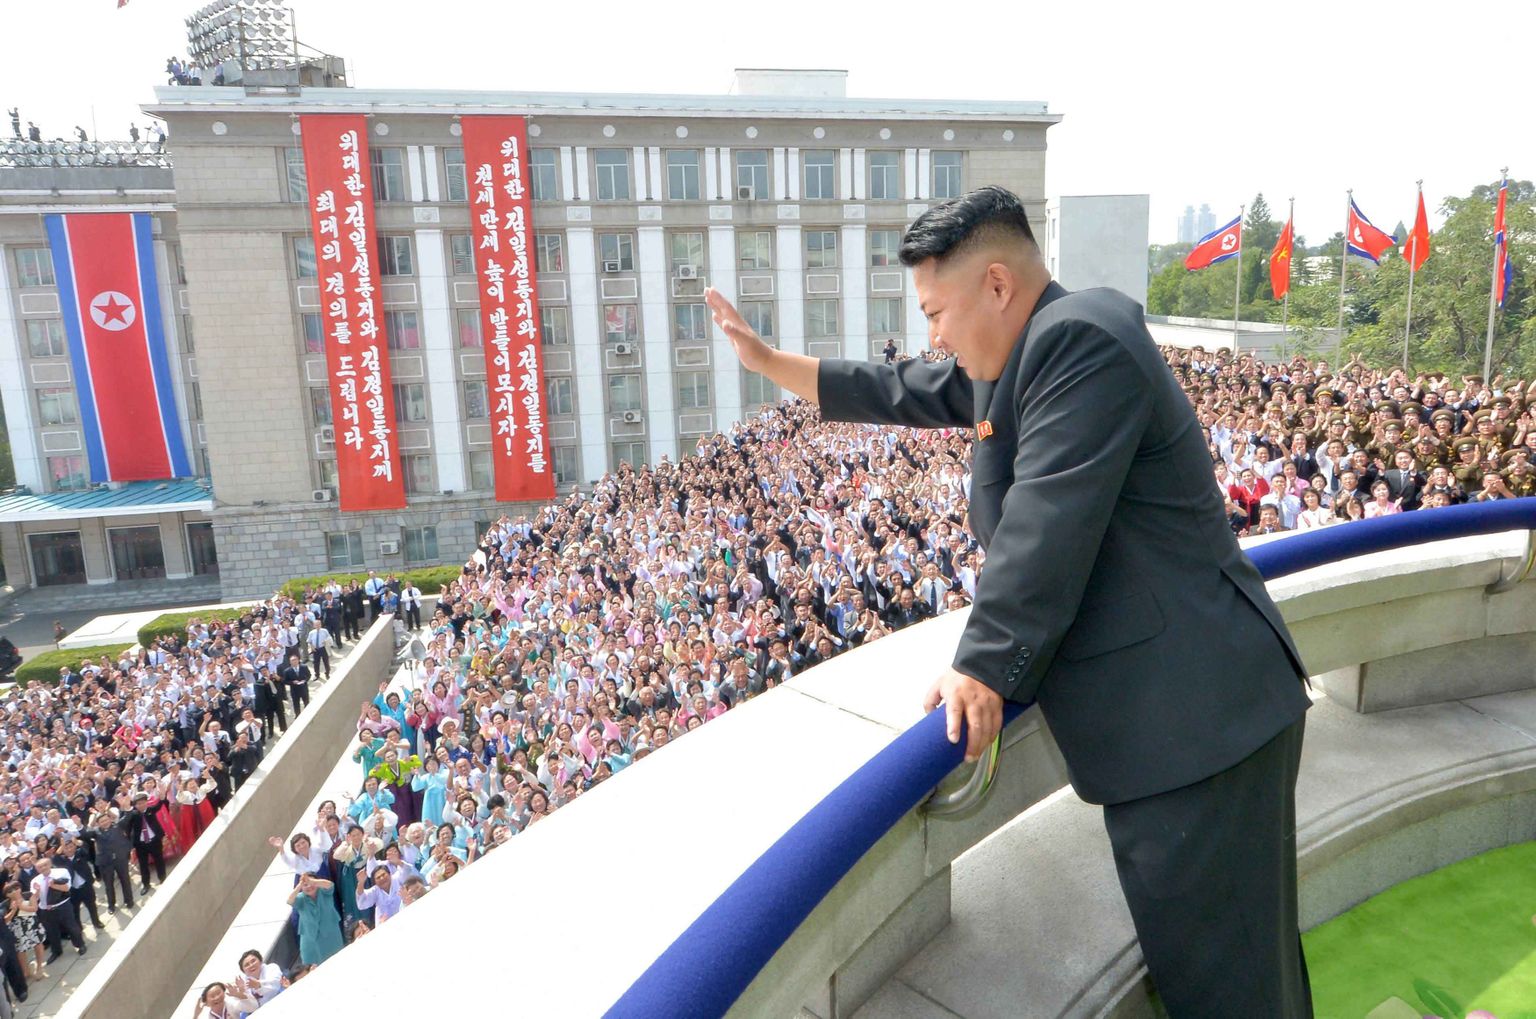 Põhja-Korea juht Kim Jong-un lehvitamas oma rahvale